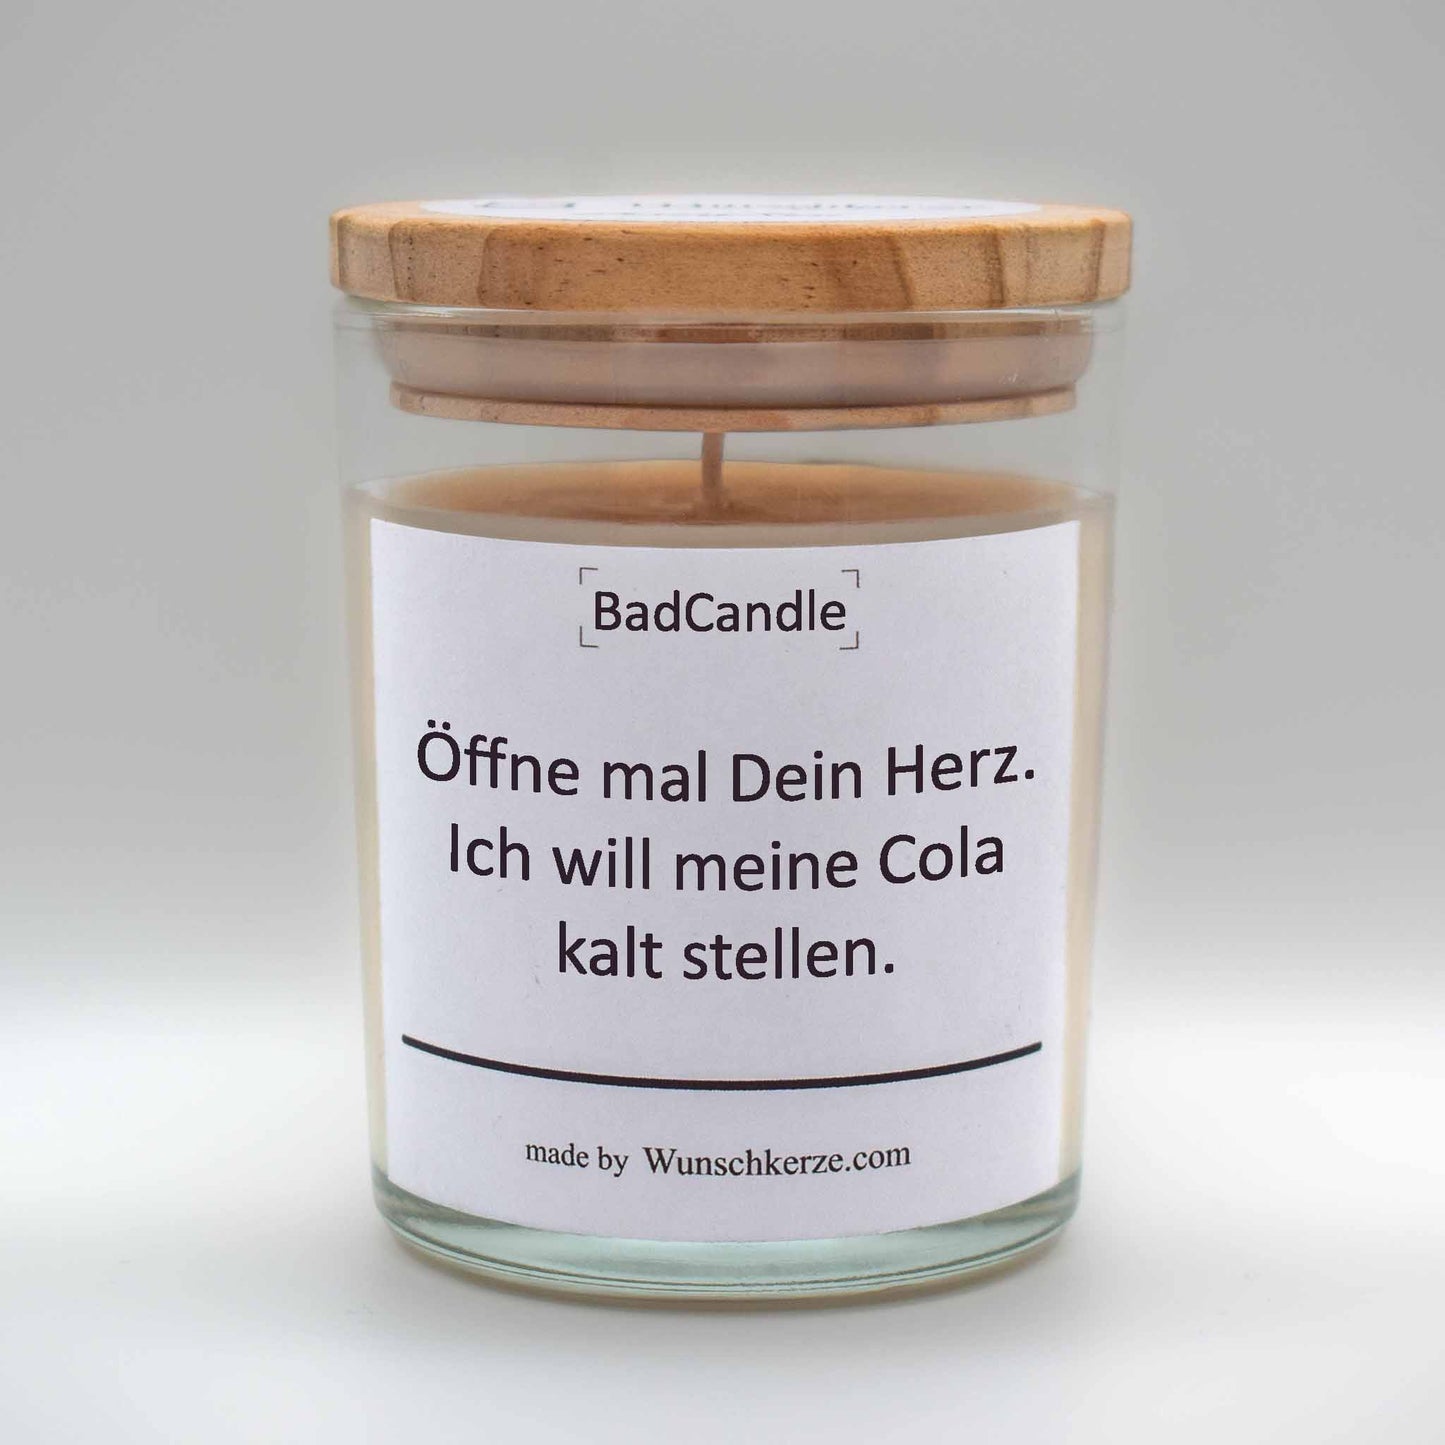 Soja Duftkerze im Glas mit Deckel aus Kiefernholz mit einem Label. Aufschrift: BadCandle - Öffne mal dein Herz. Ich will meine Cola kalt stellen.